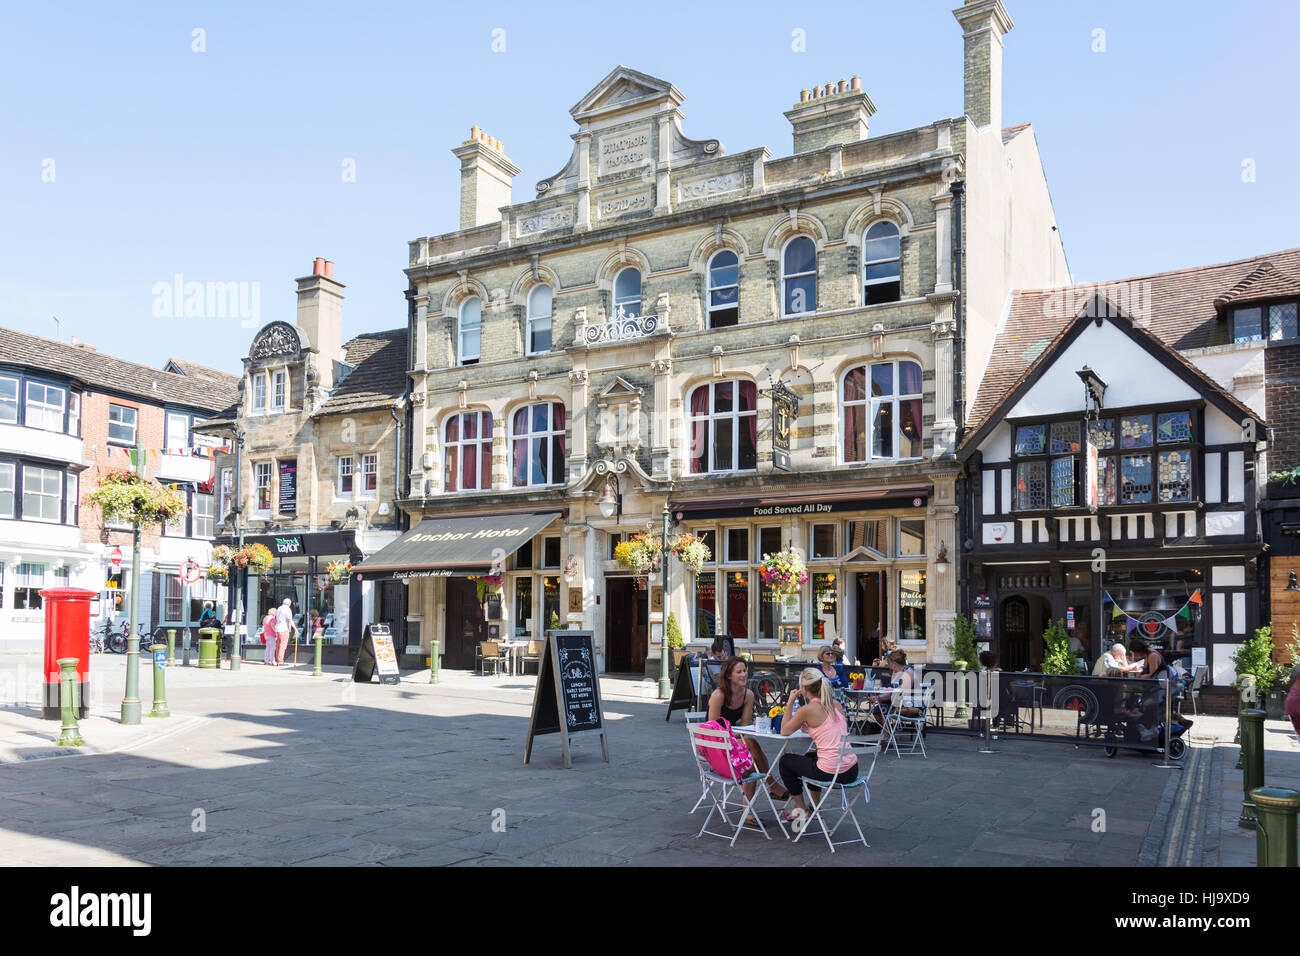 Market Square, Horsham, West Sussex, England, United Kingdom Stock Photo